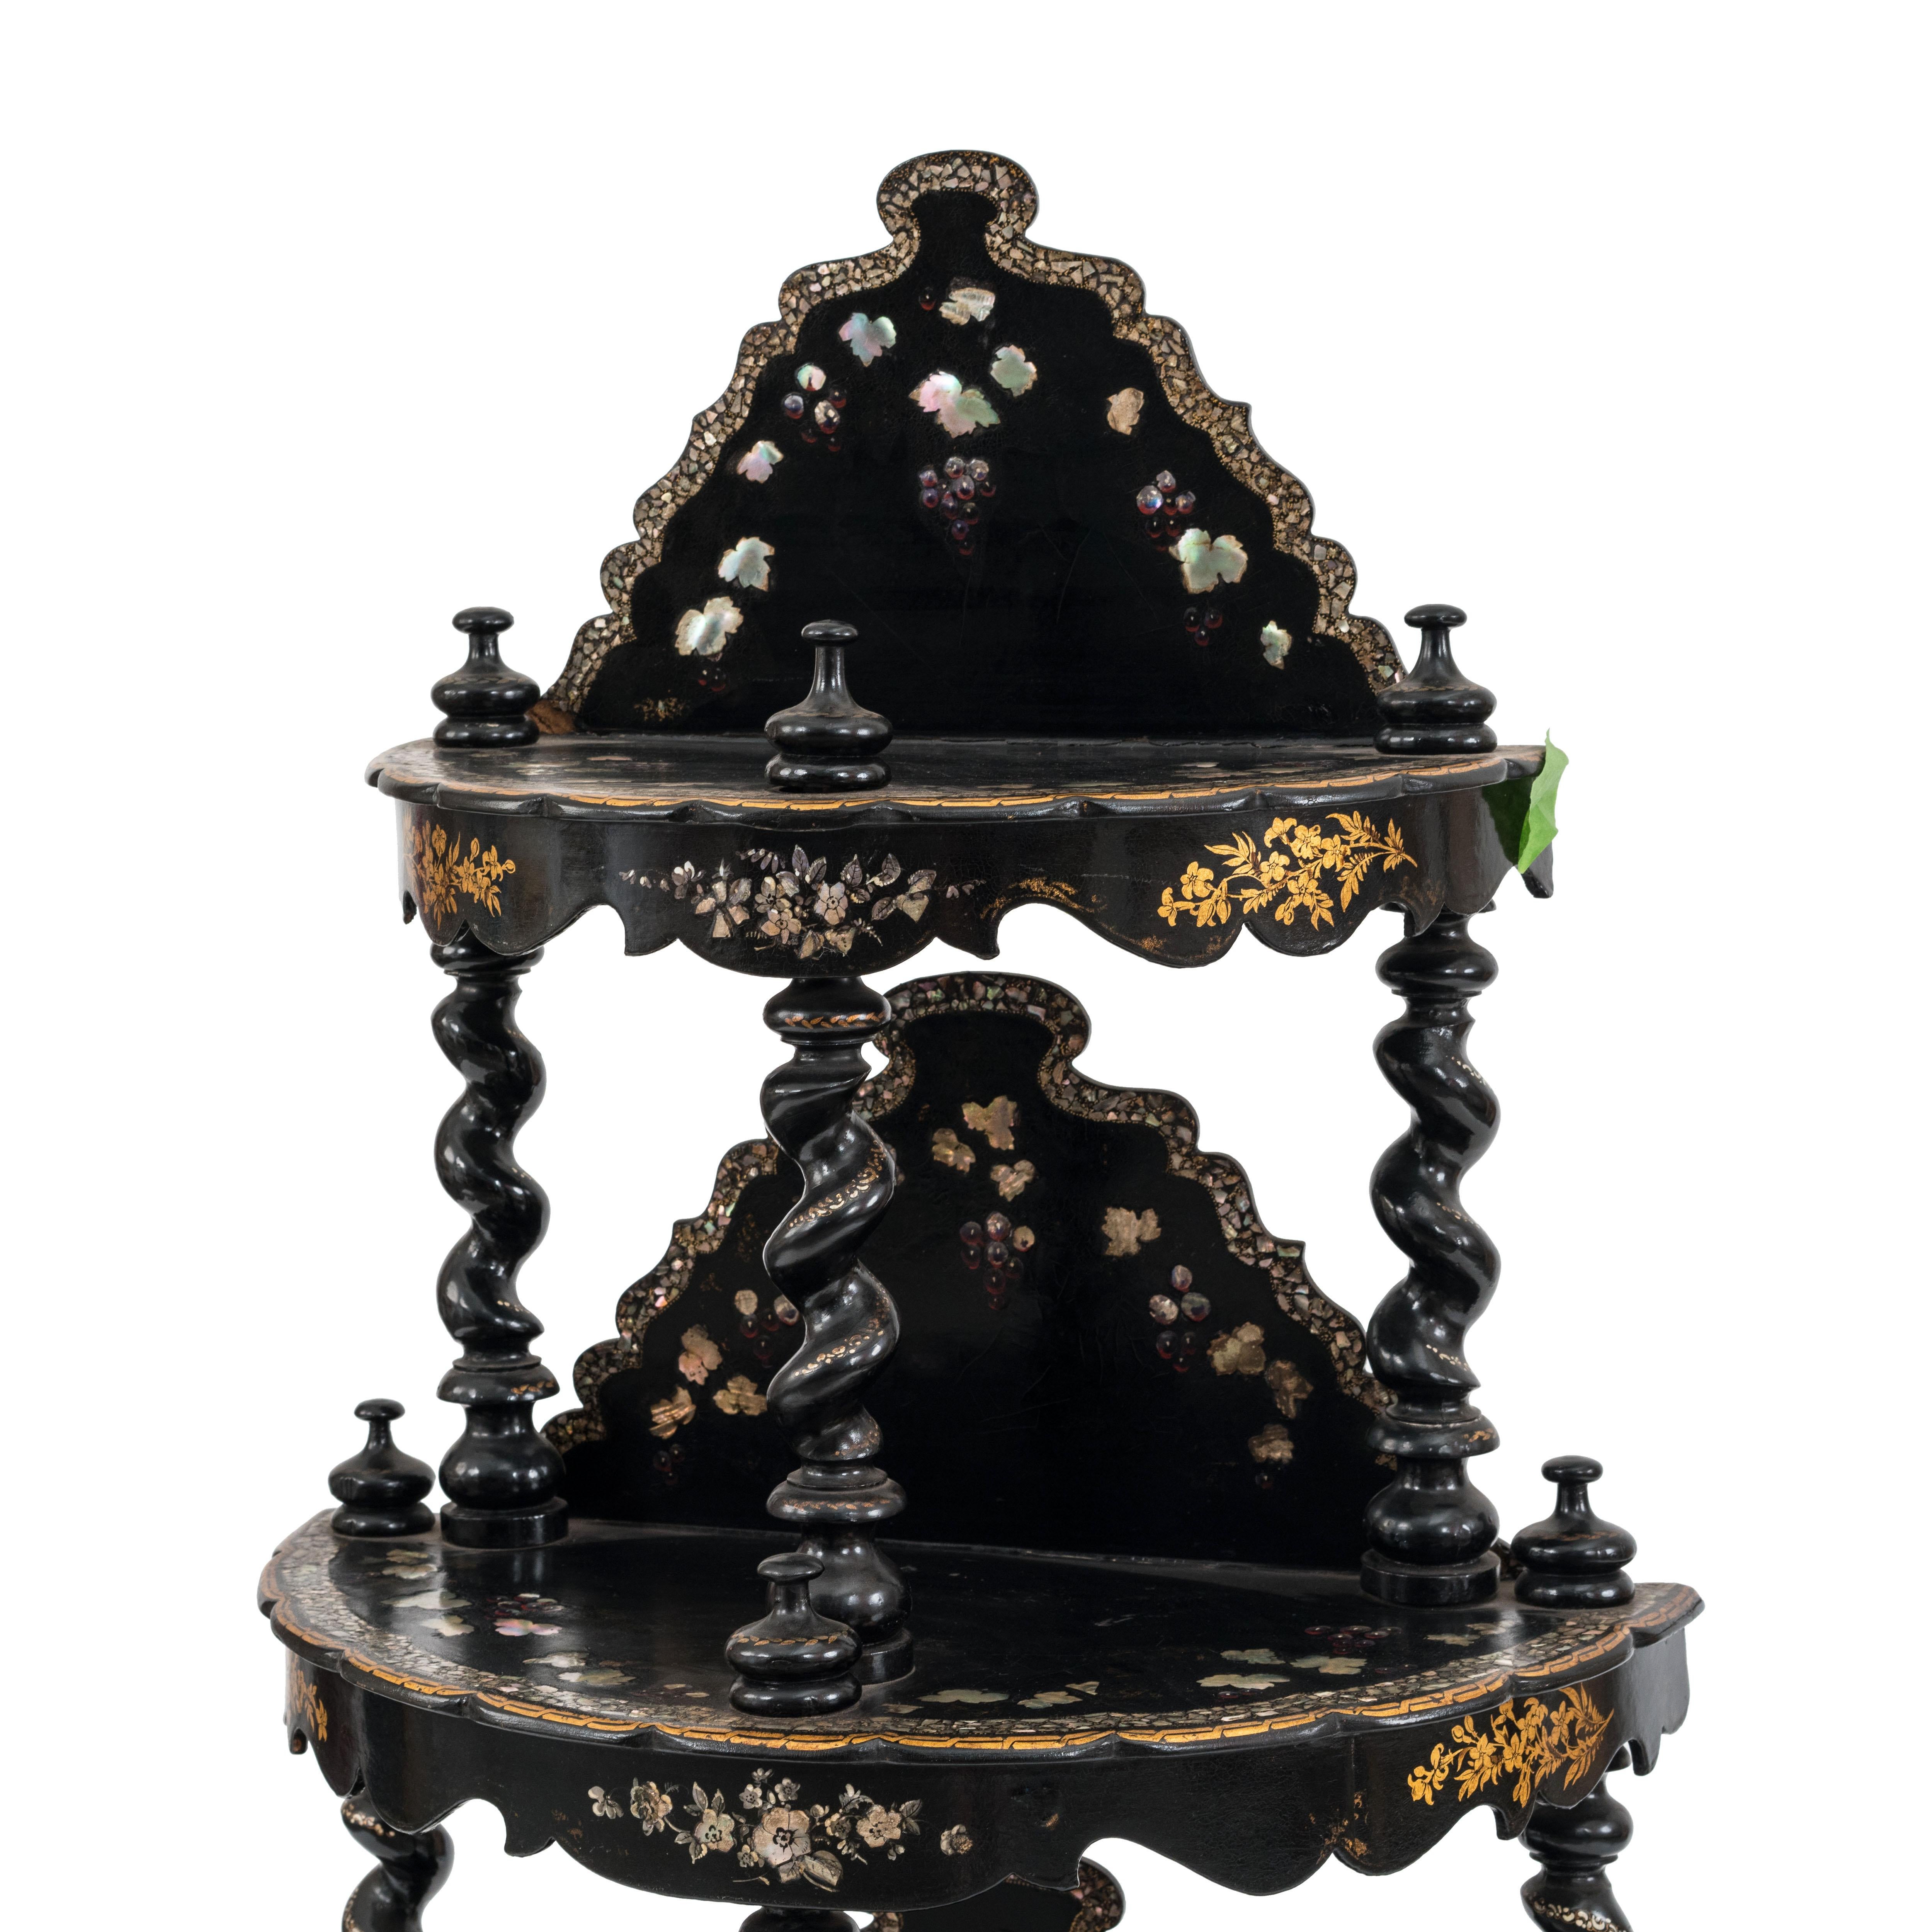 Etagère anglaise victorienne en papier mâché incrusté de perles, laquée noir, à 4 niveaux, avec pieds et supports tournés, avec rampe arrière.
    